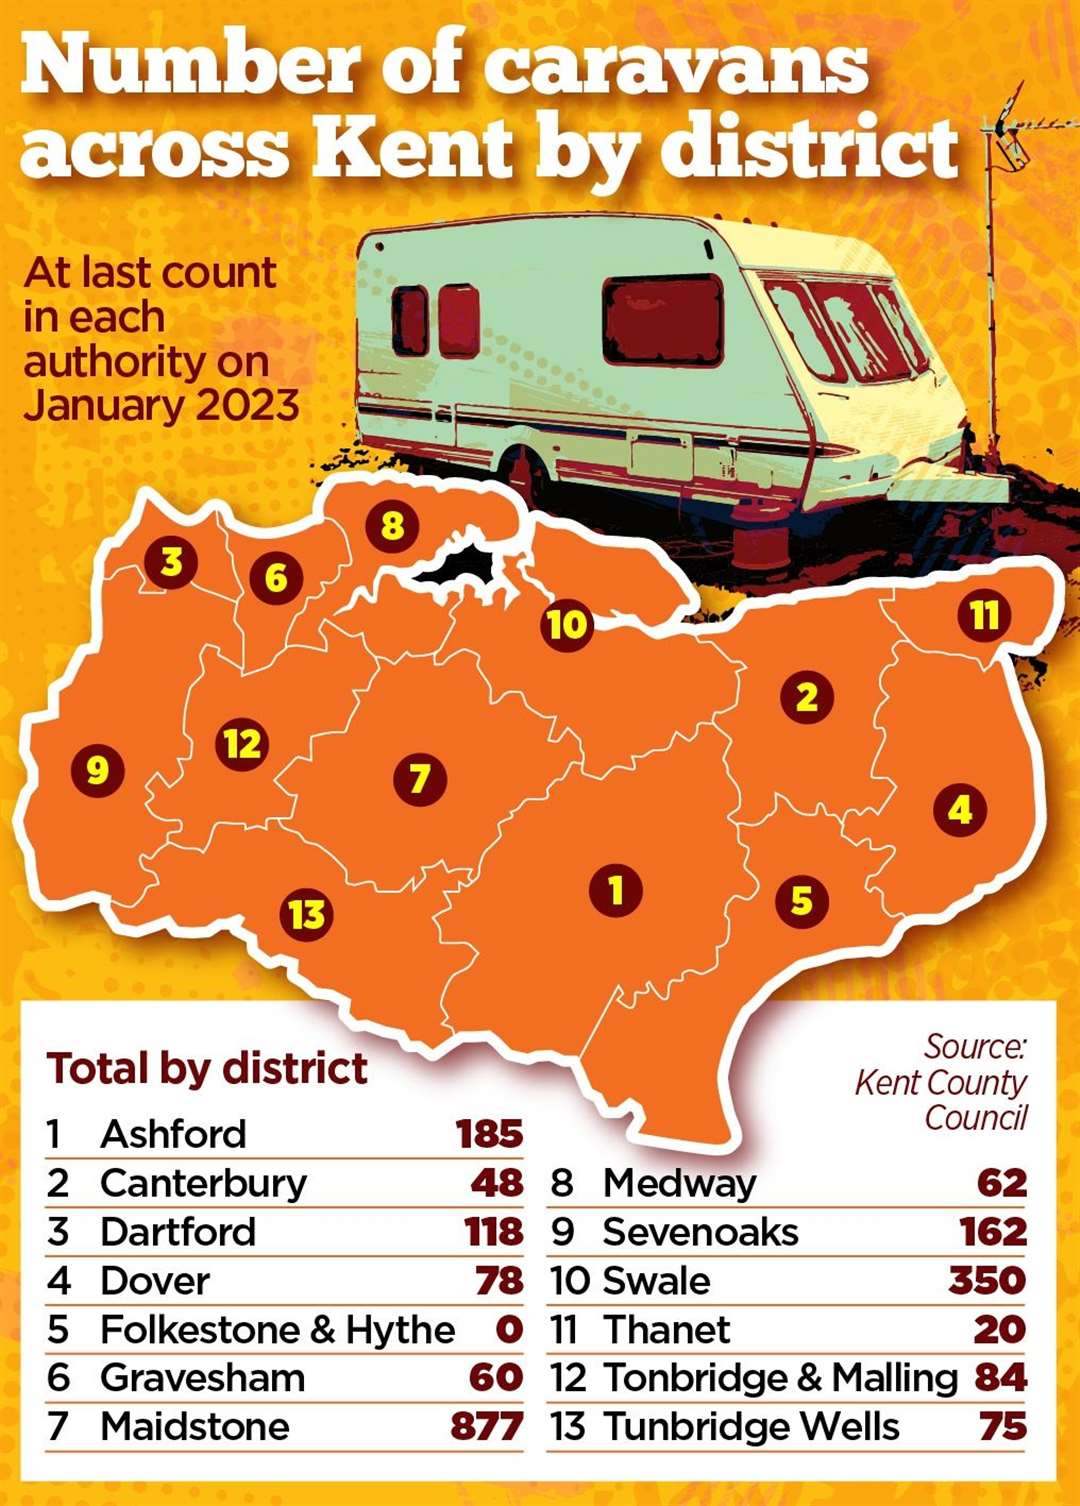 Kent's caravan count in each district